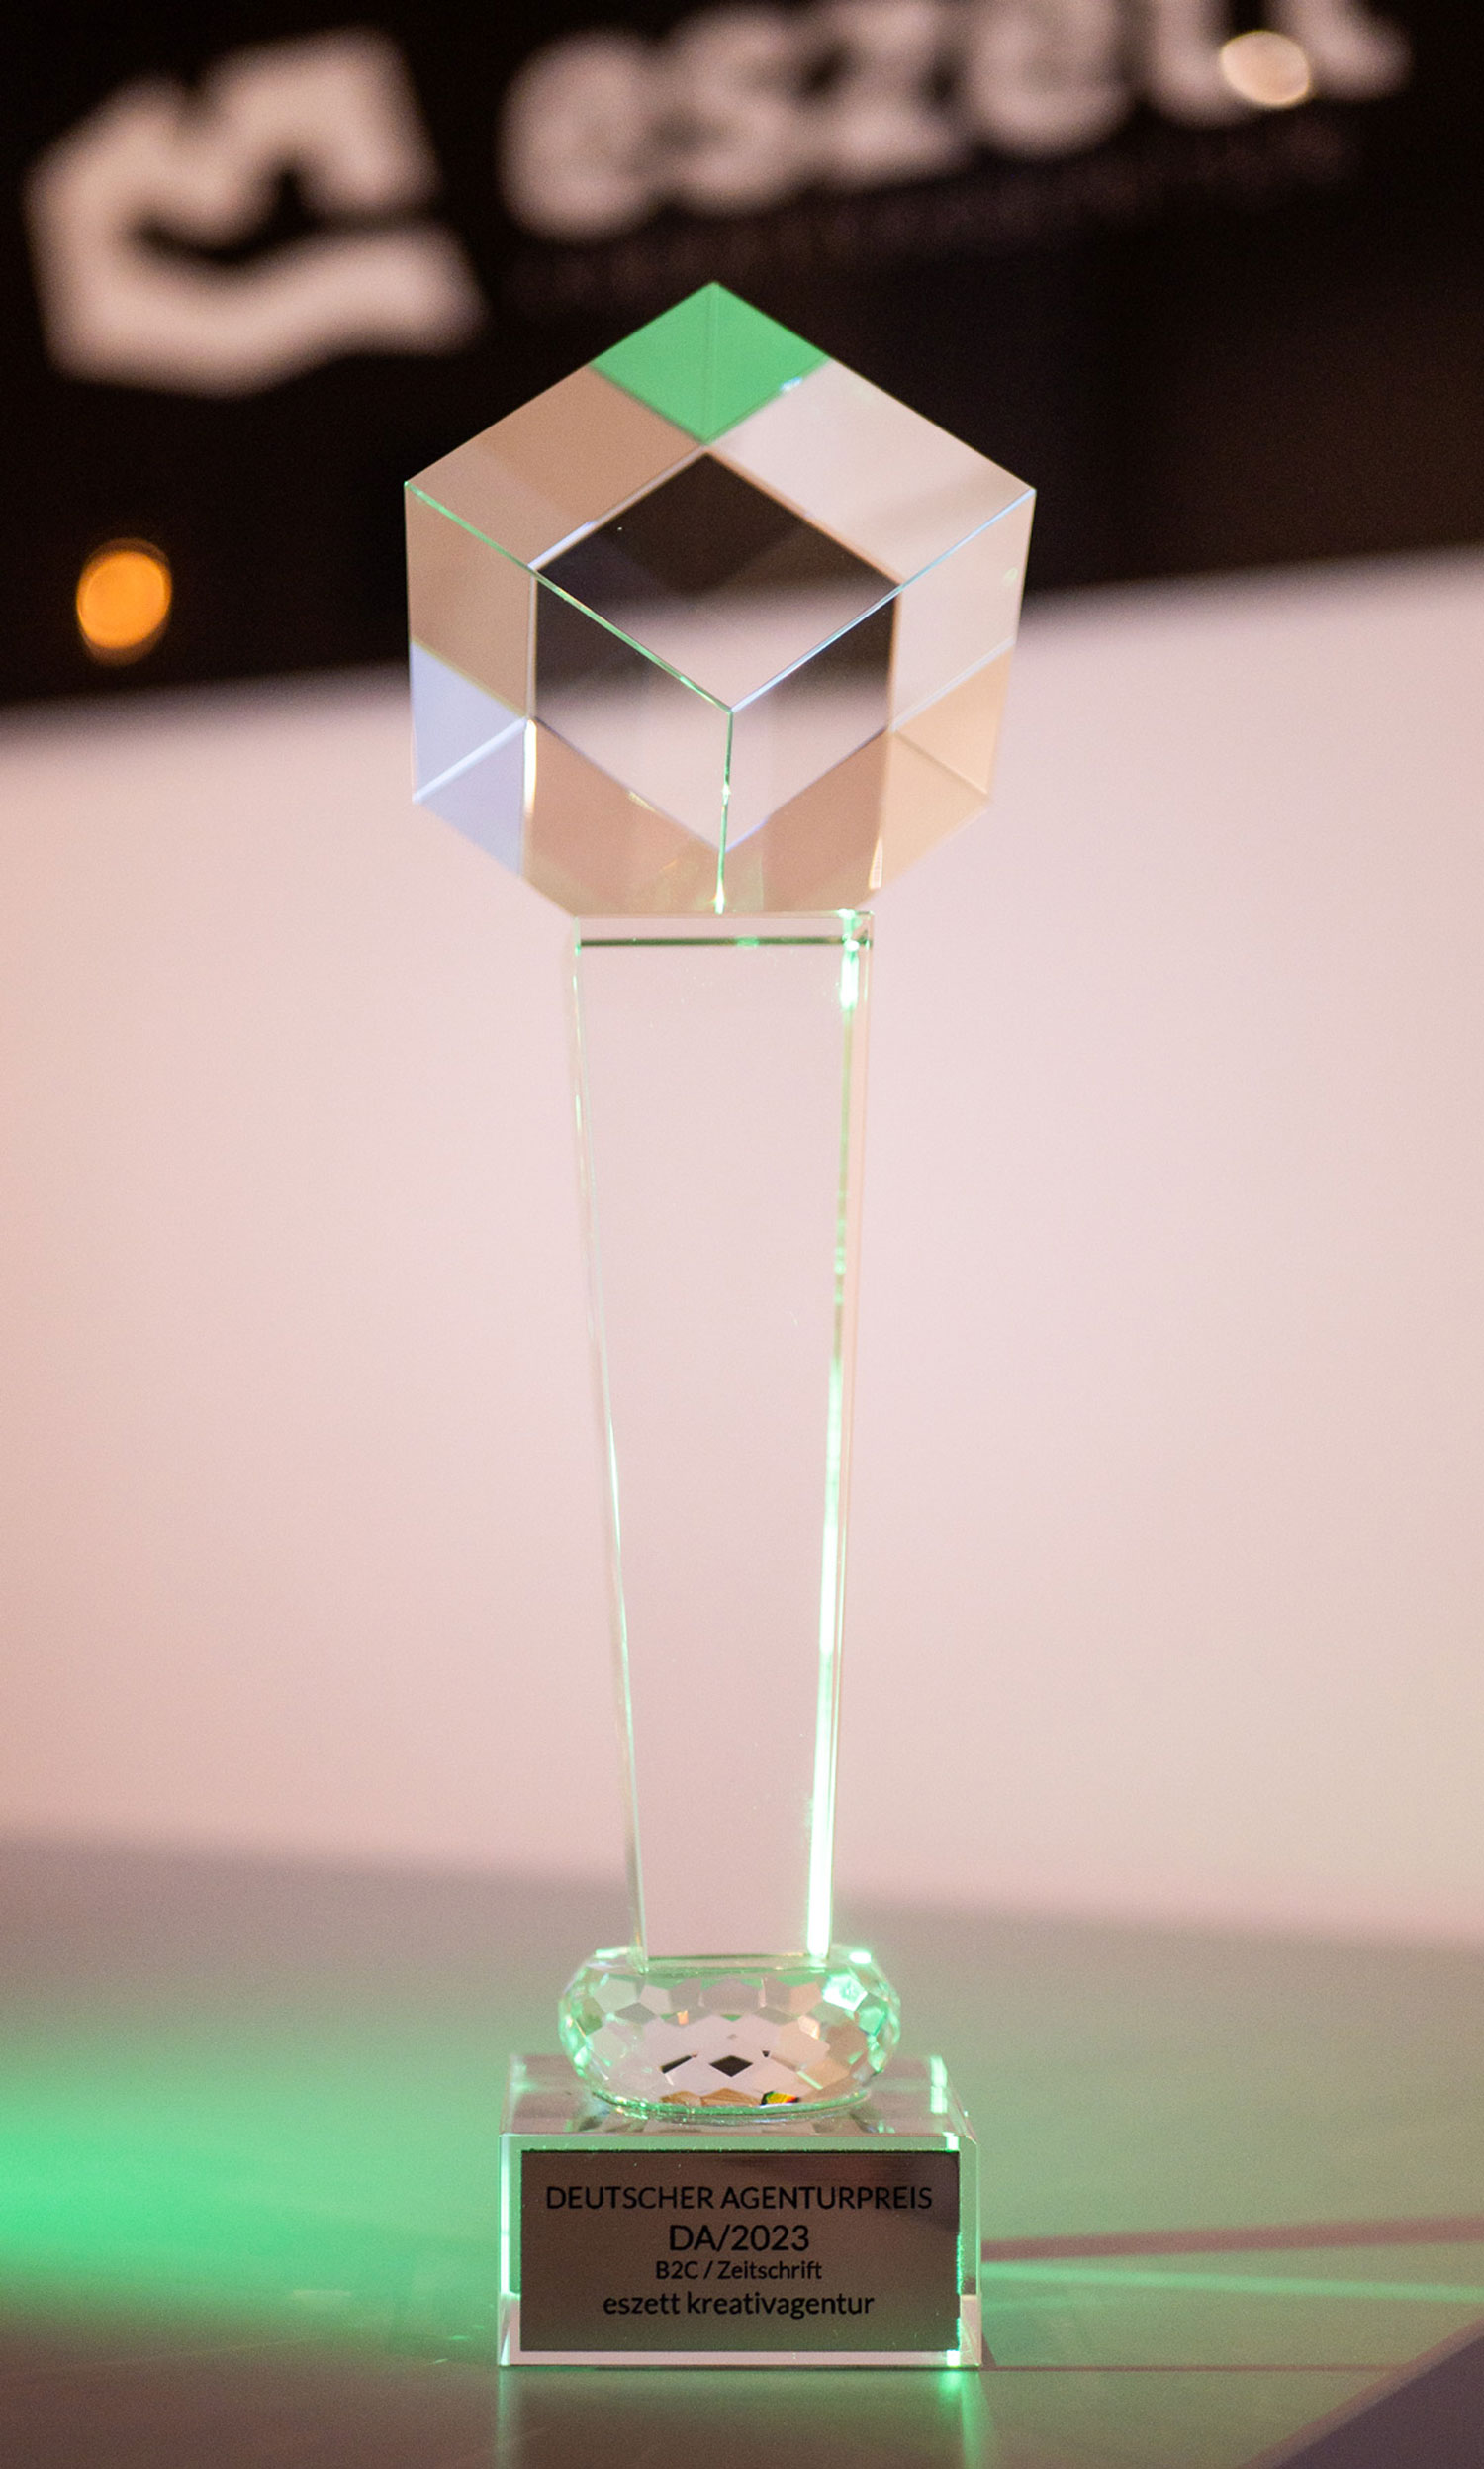 eszett kreativagentur ist Award Gewinner Agentur Deutscher Agenturpreis 2023